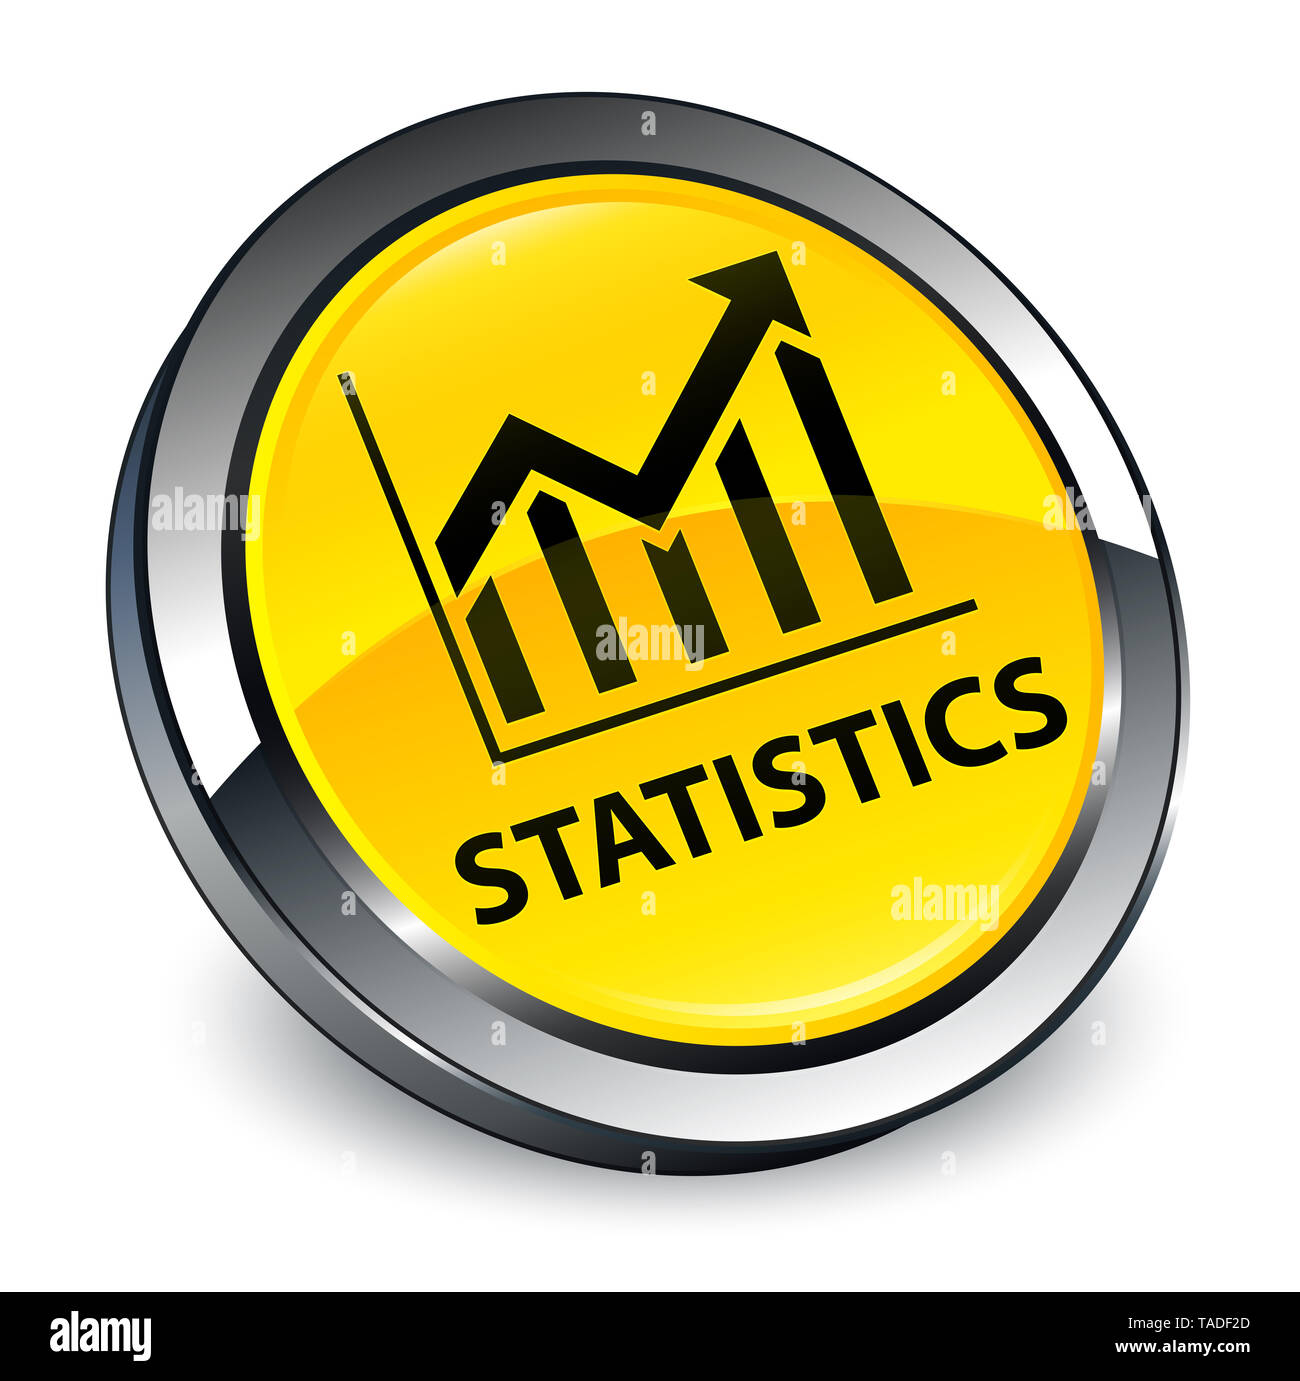 Statistiche isolati su 3d giallo pulsante rotondo illustrazione astratta Foto Stock